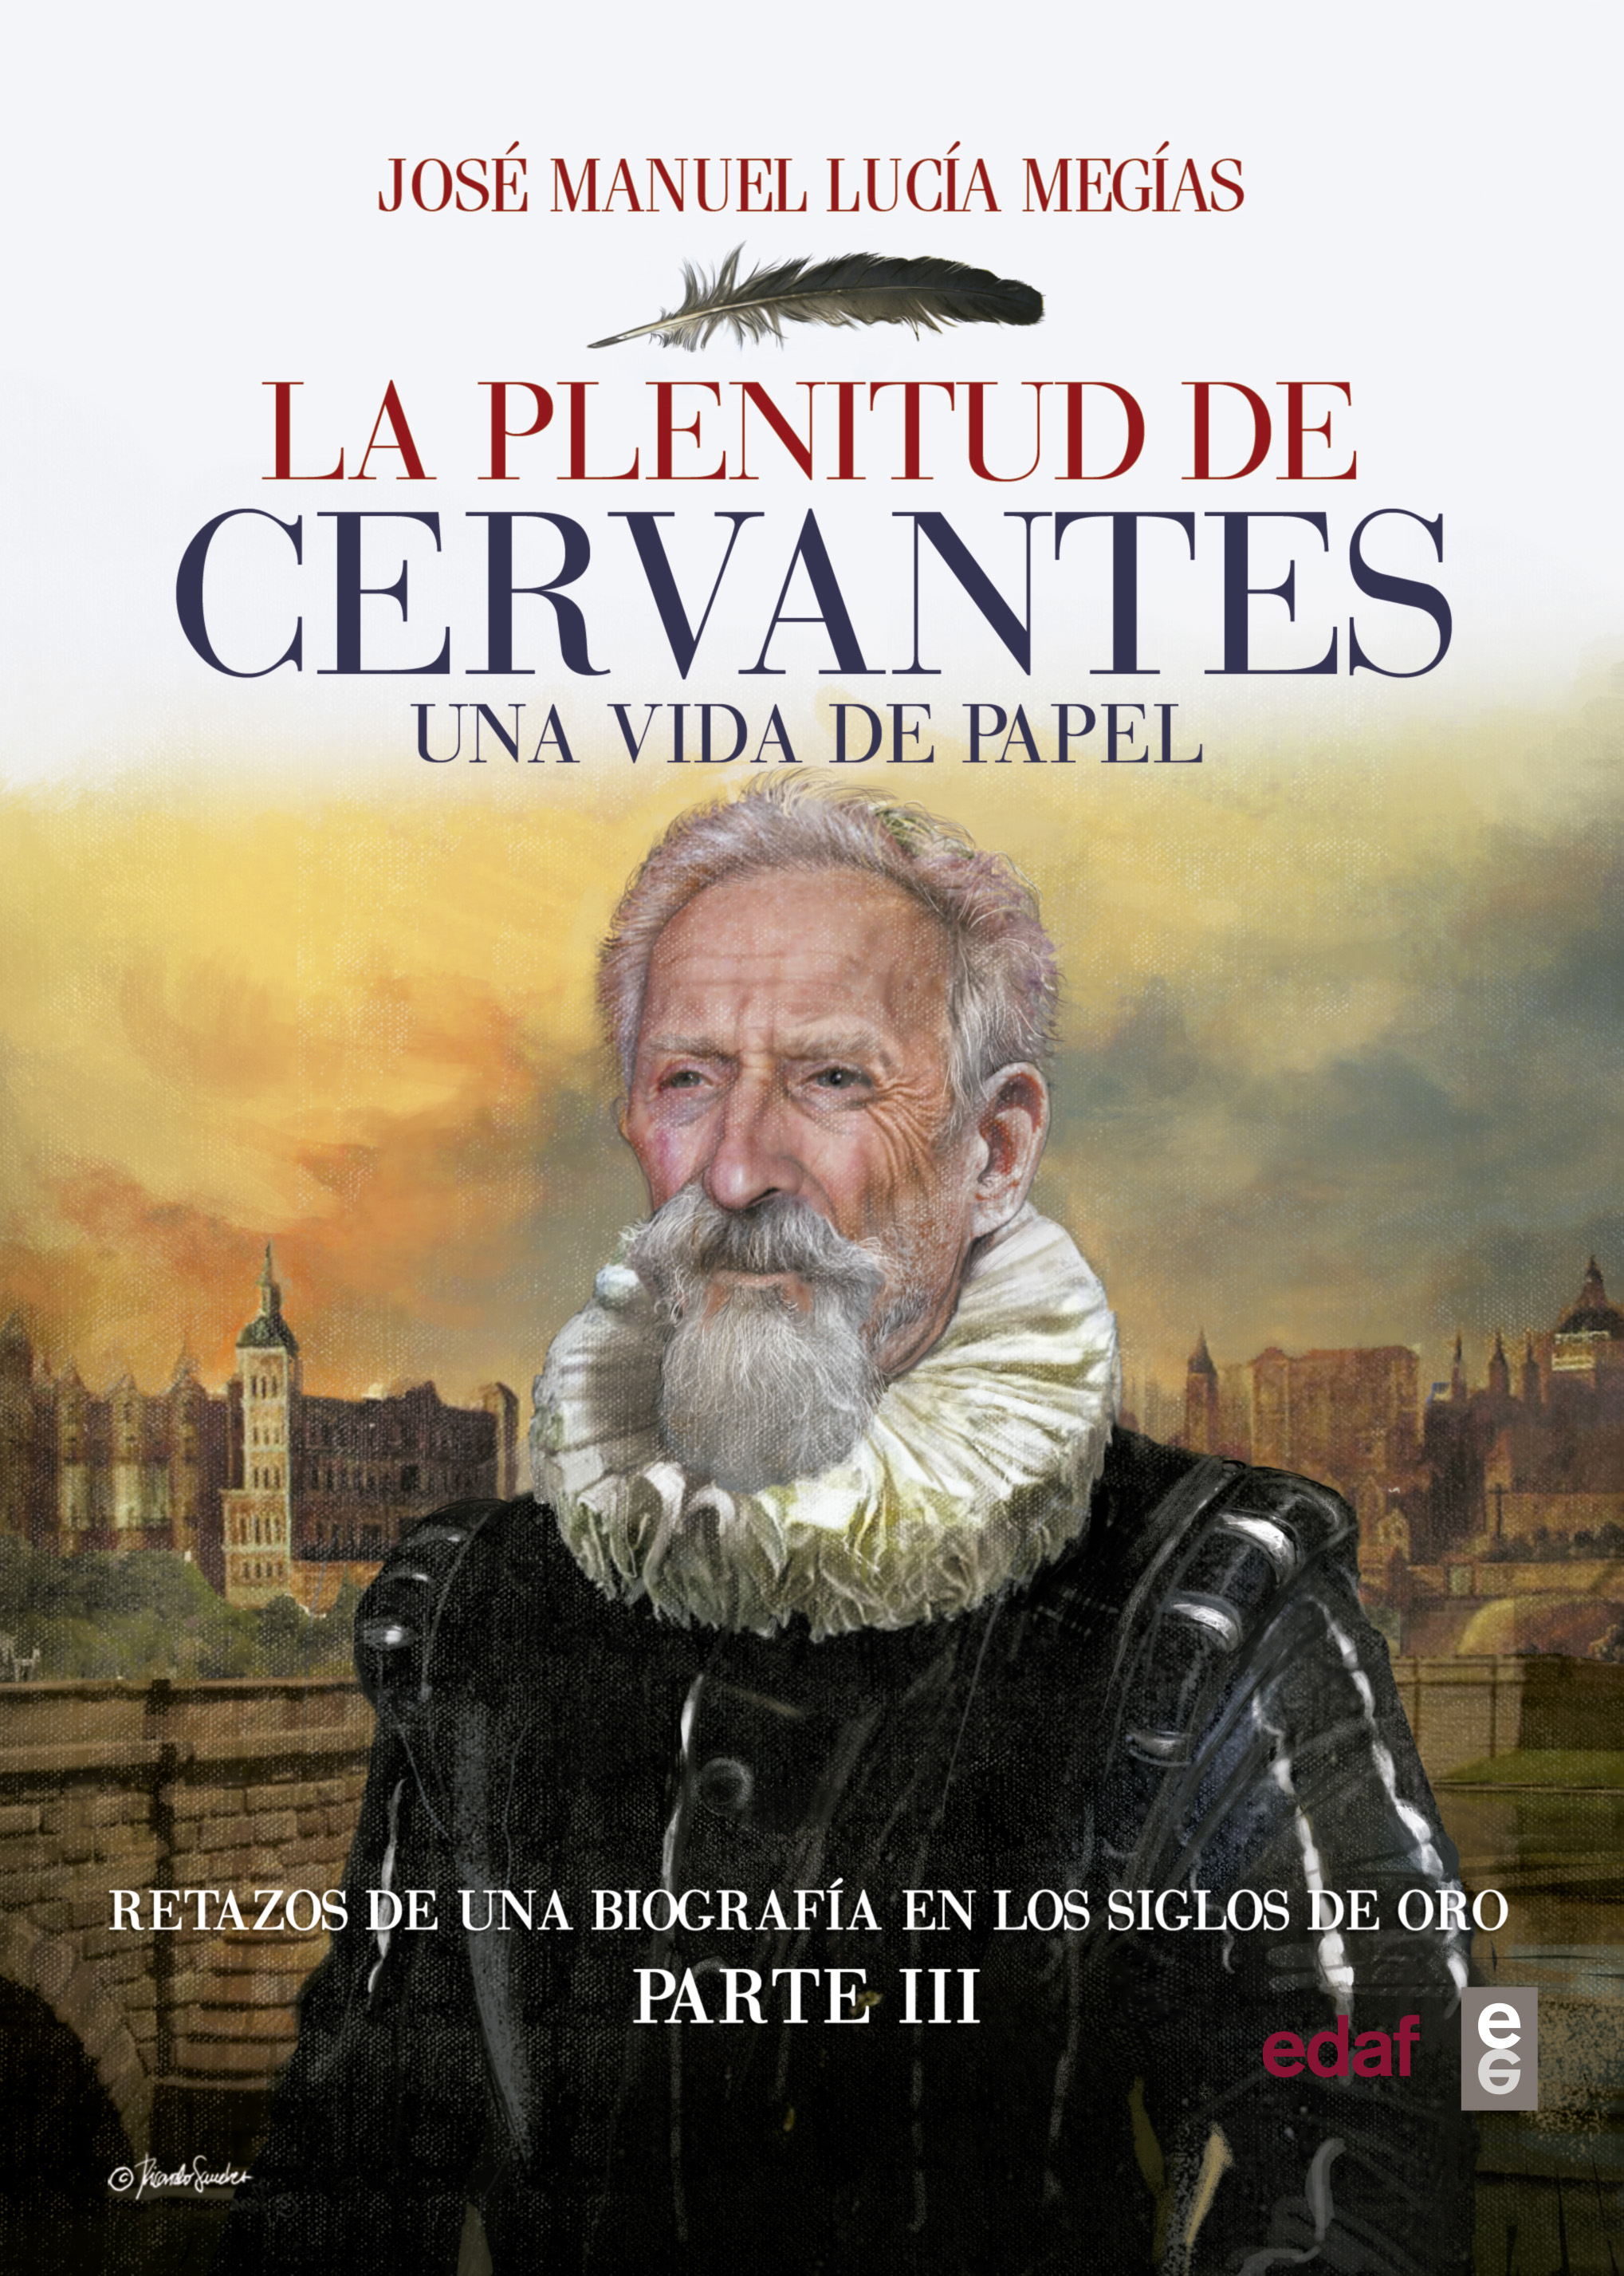 Plenitud de Cervantes, La "Una vida de papel. Retazos de una biografía en los siglos de oro. Parte III"